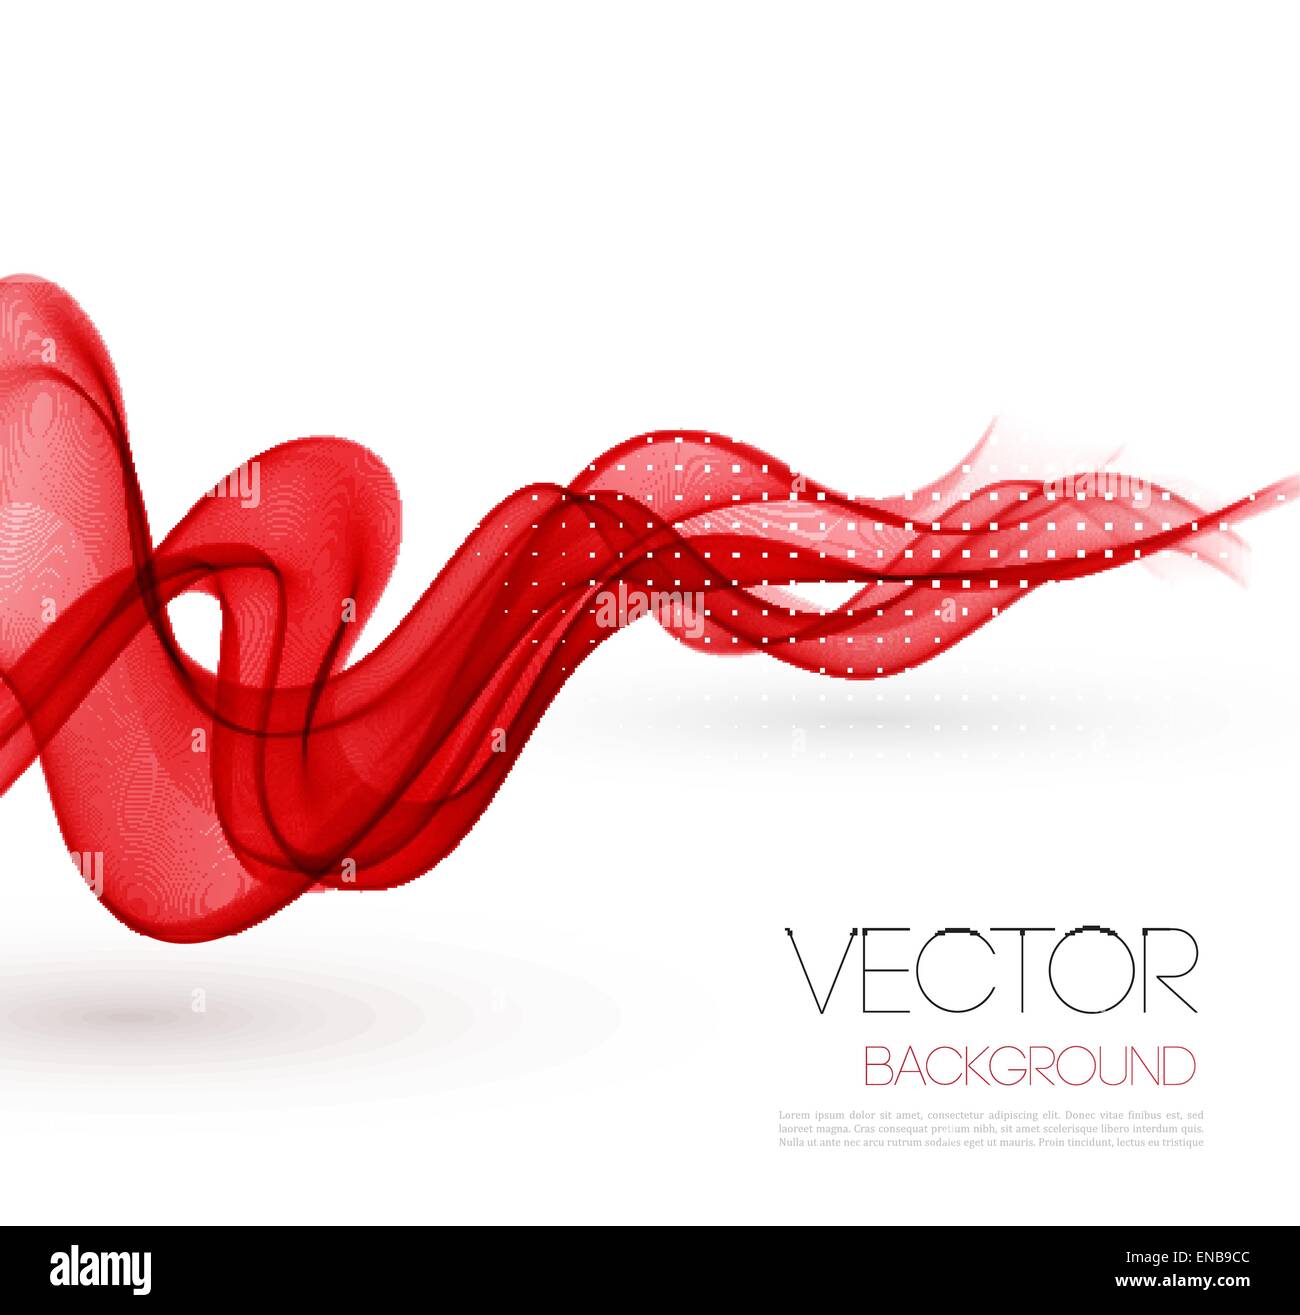 Vektor-Abstrakt rot rauchigen Wellen Hintergrund. Template-Broschüre design Stock Vektor